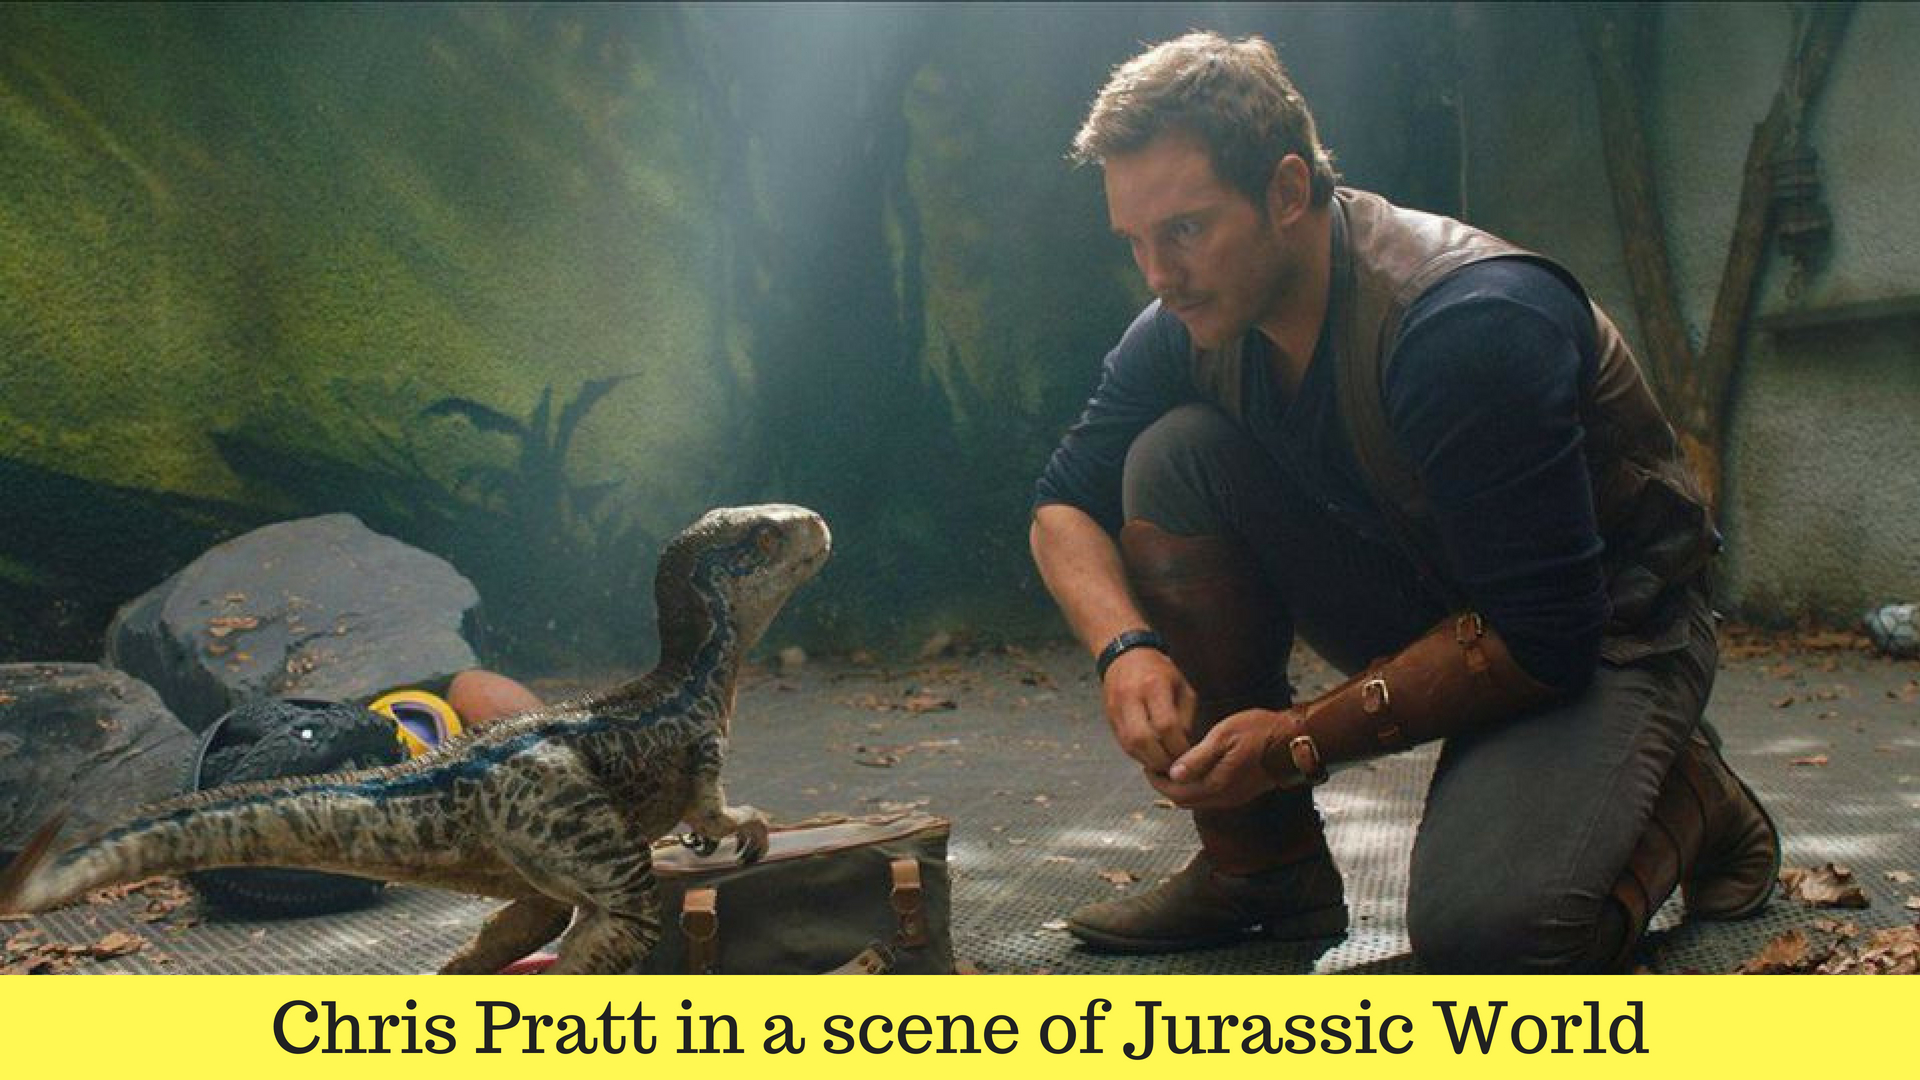 Chris Pratt in a scene of Jurassic World